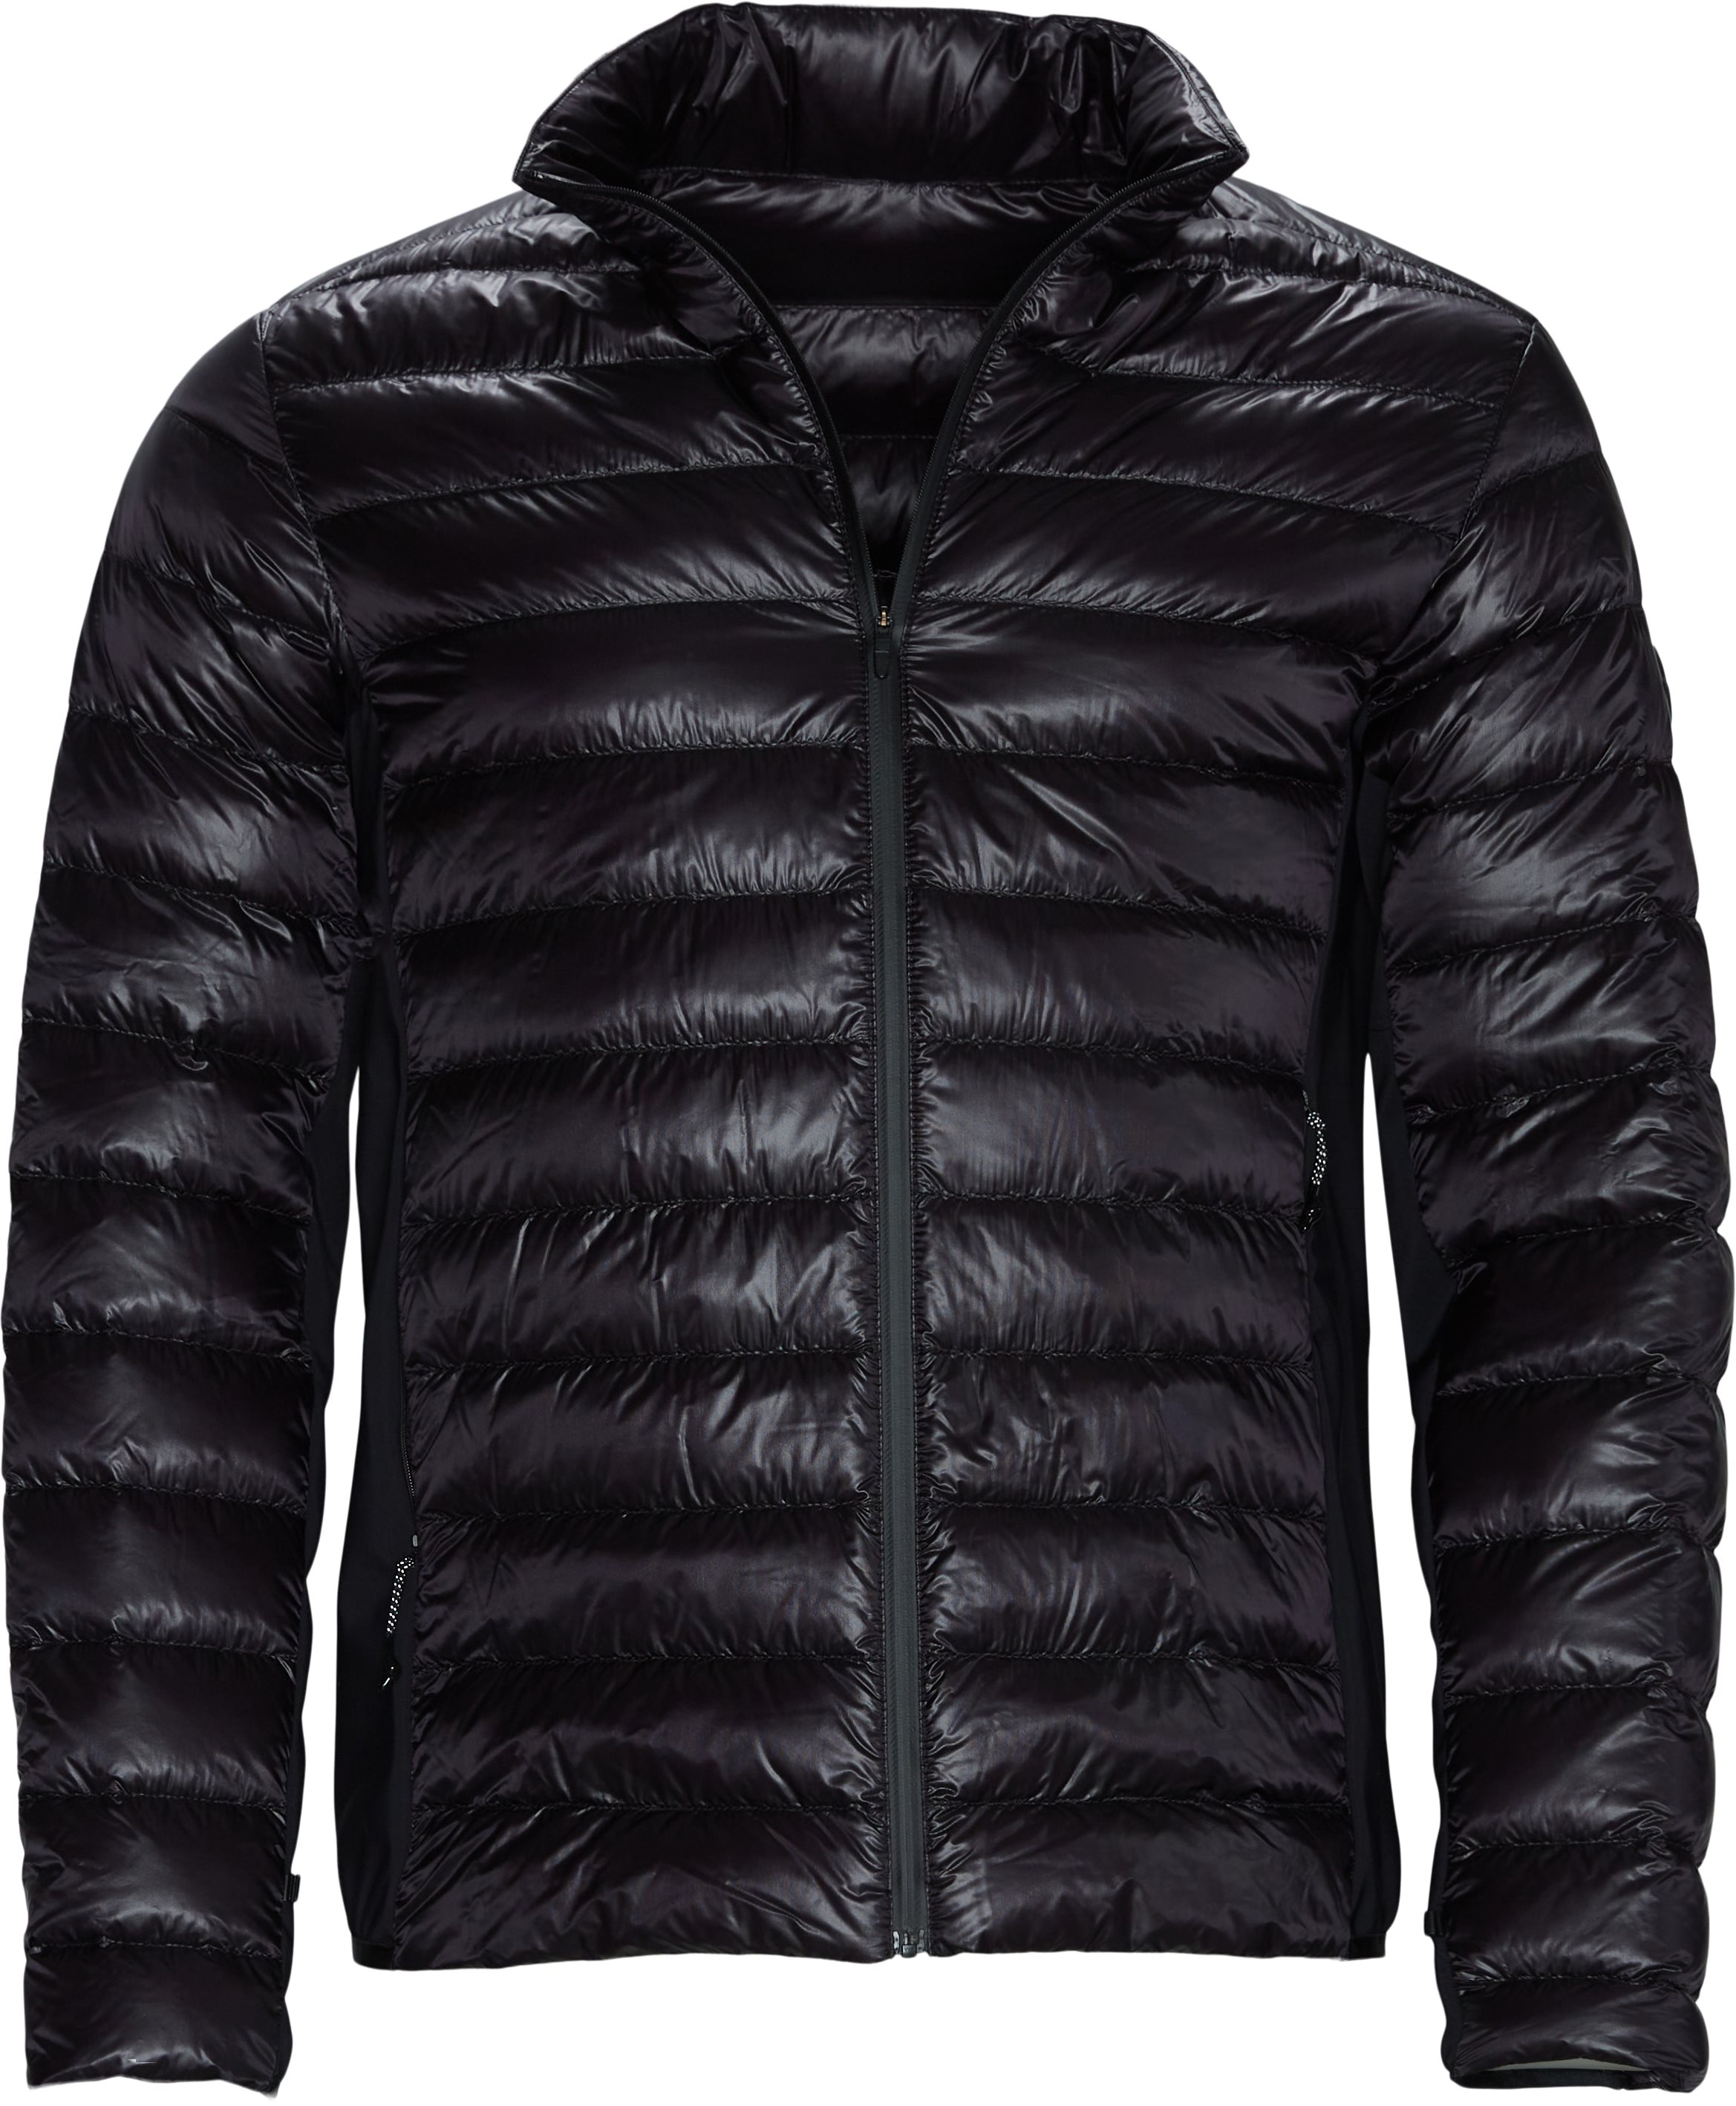 Vosges Jacket - Jakker - Regular fit - Sort